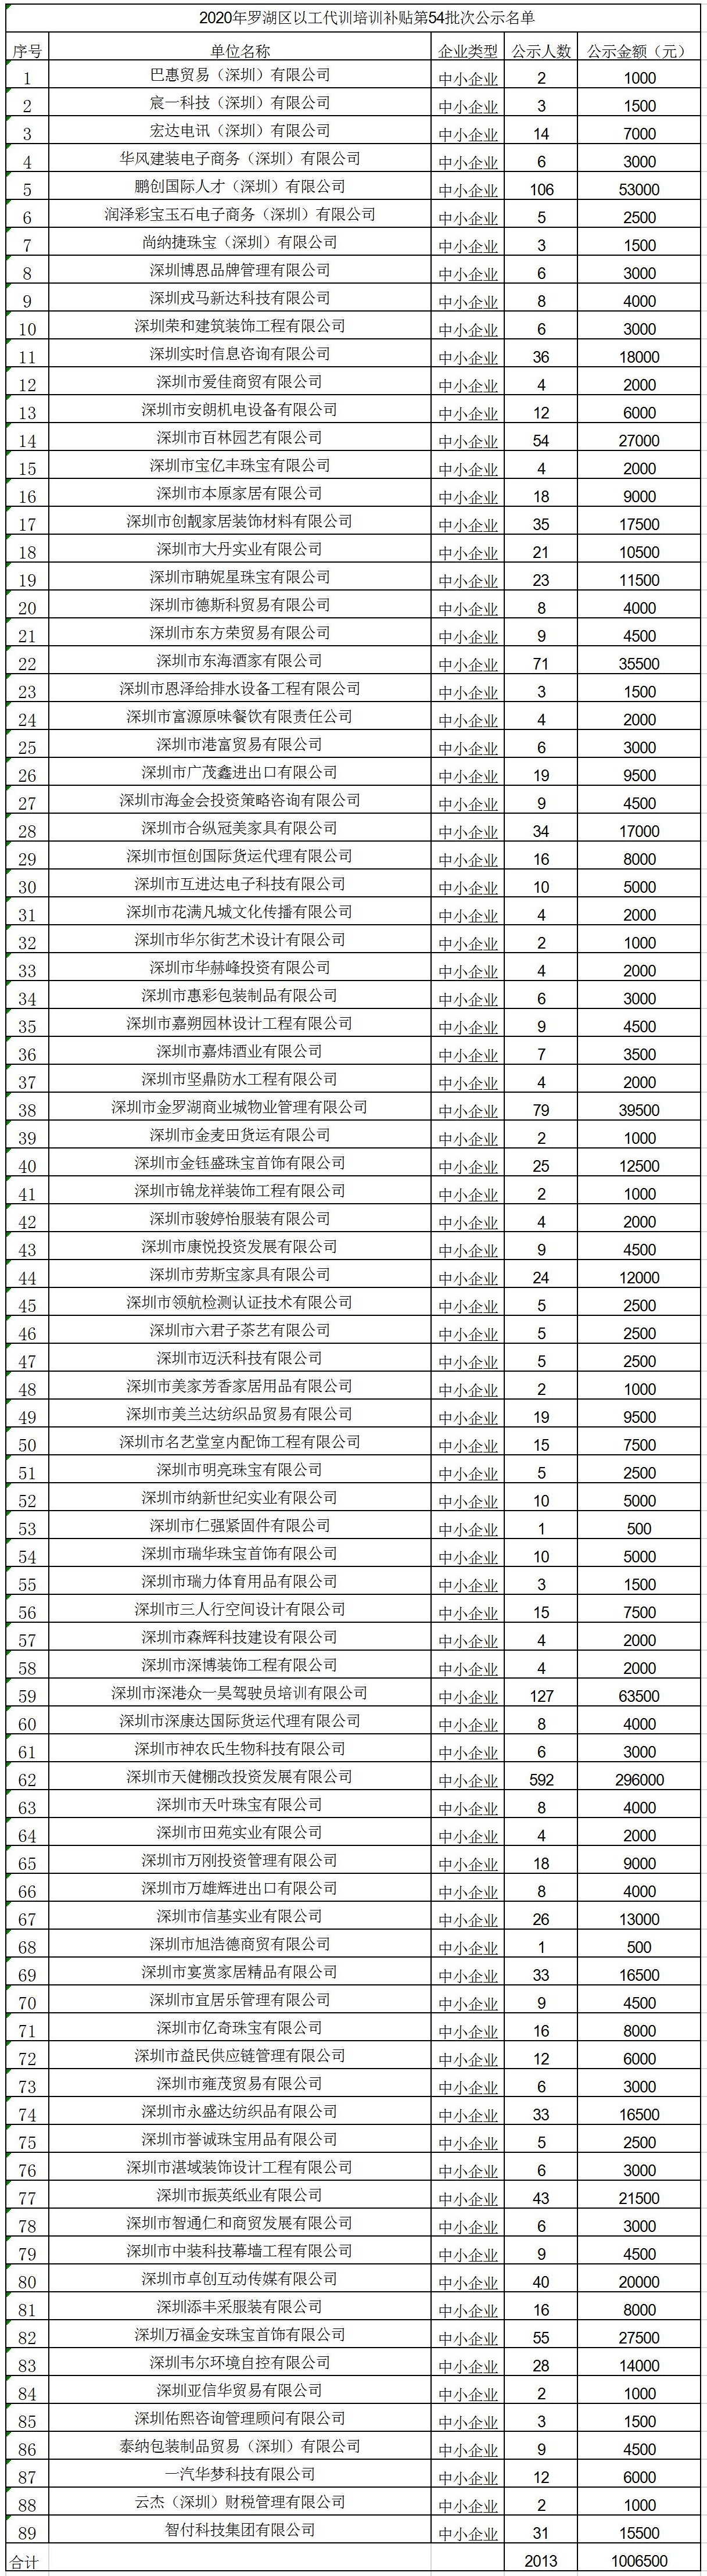 2020年深圳市罗湖区以工代训培训补贴第54批次公示名单.jpg